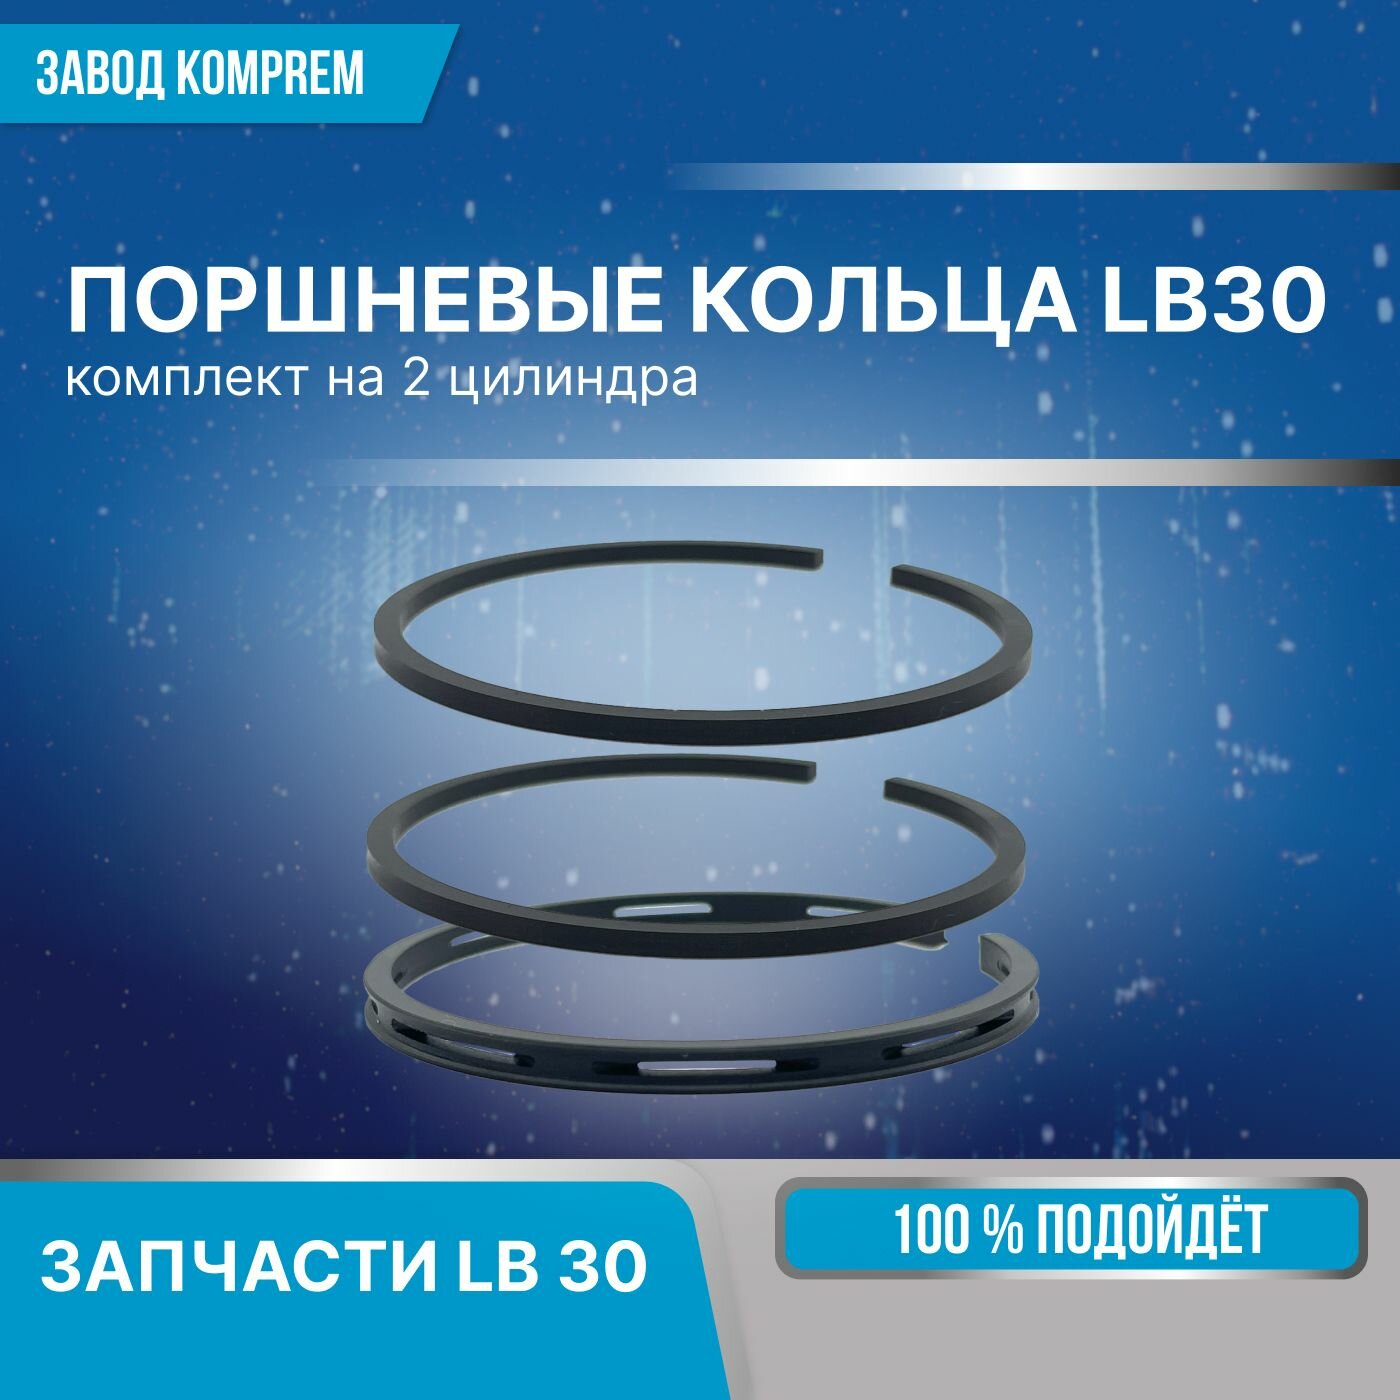 Комплект поршневых колец для LB30 (на 2 цилиндра) Komprem чугун